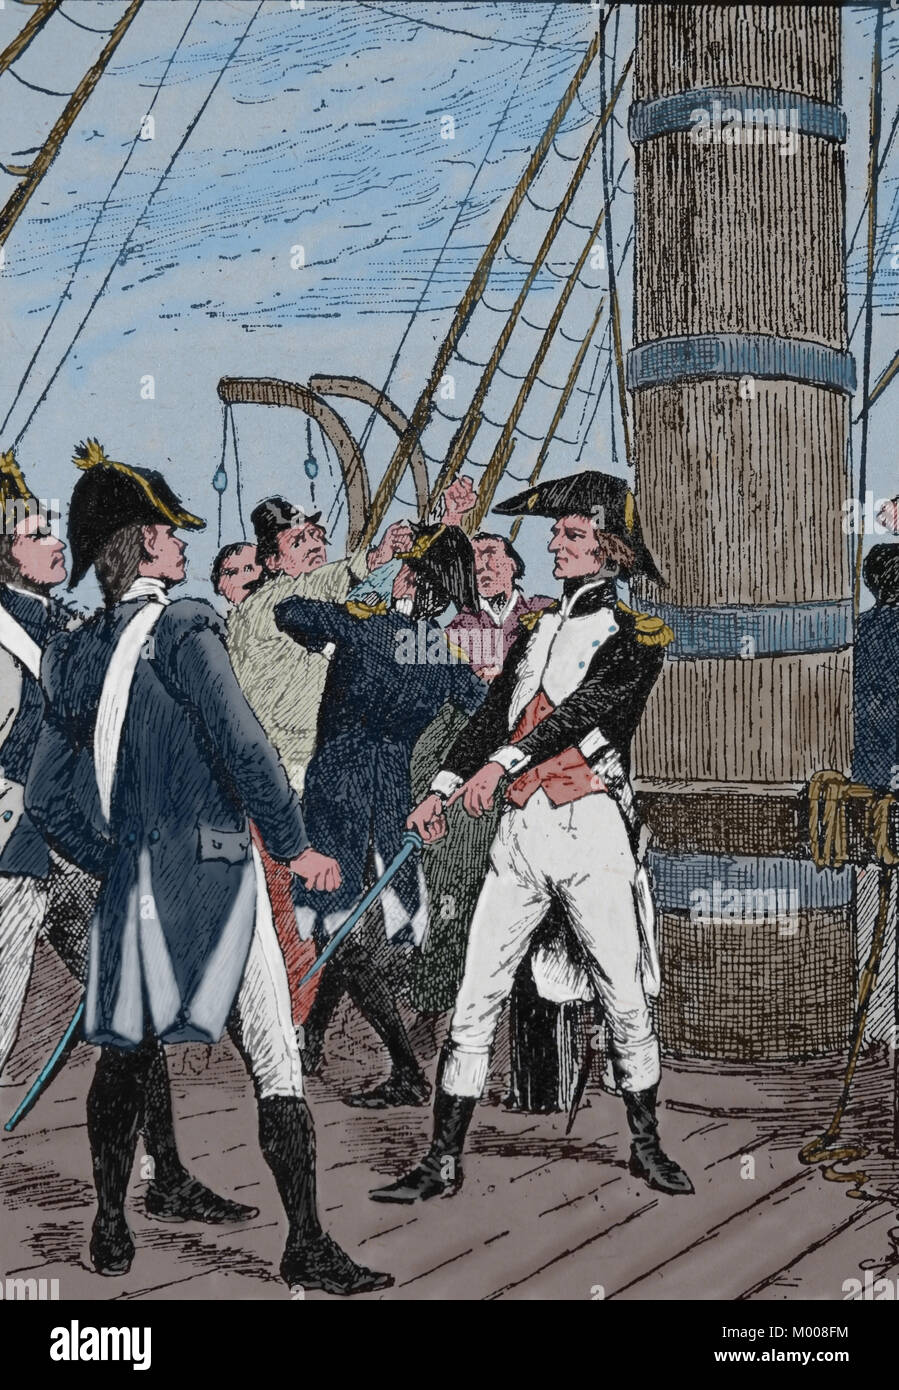 Schlacht von Trafalgar, 1805. Napoleonischen Kriege. Französische Pierre-Charles Villeneuve (1763-1806) überlässt Häftling. Stockfoto